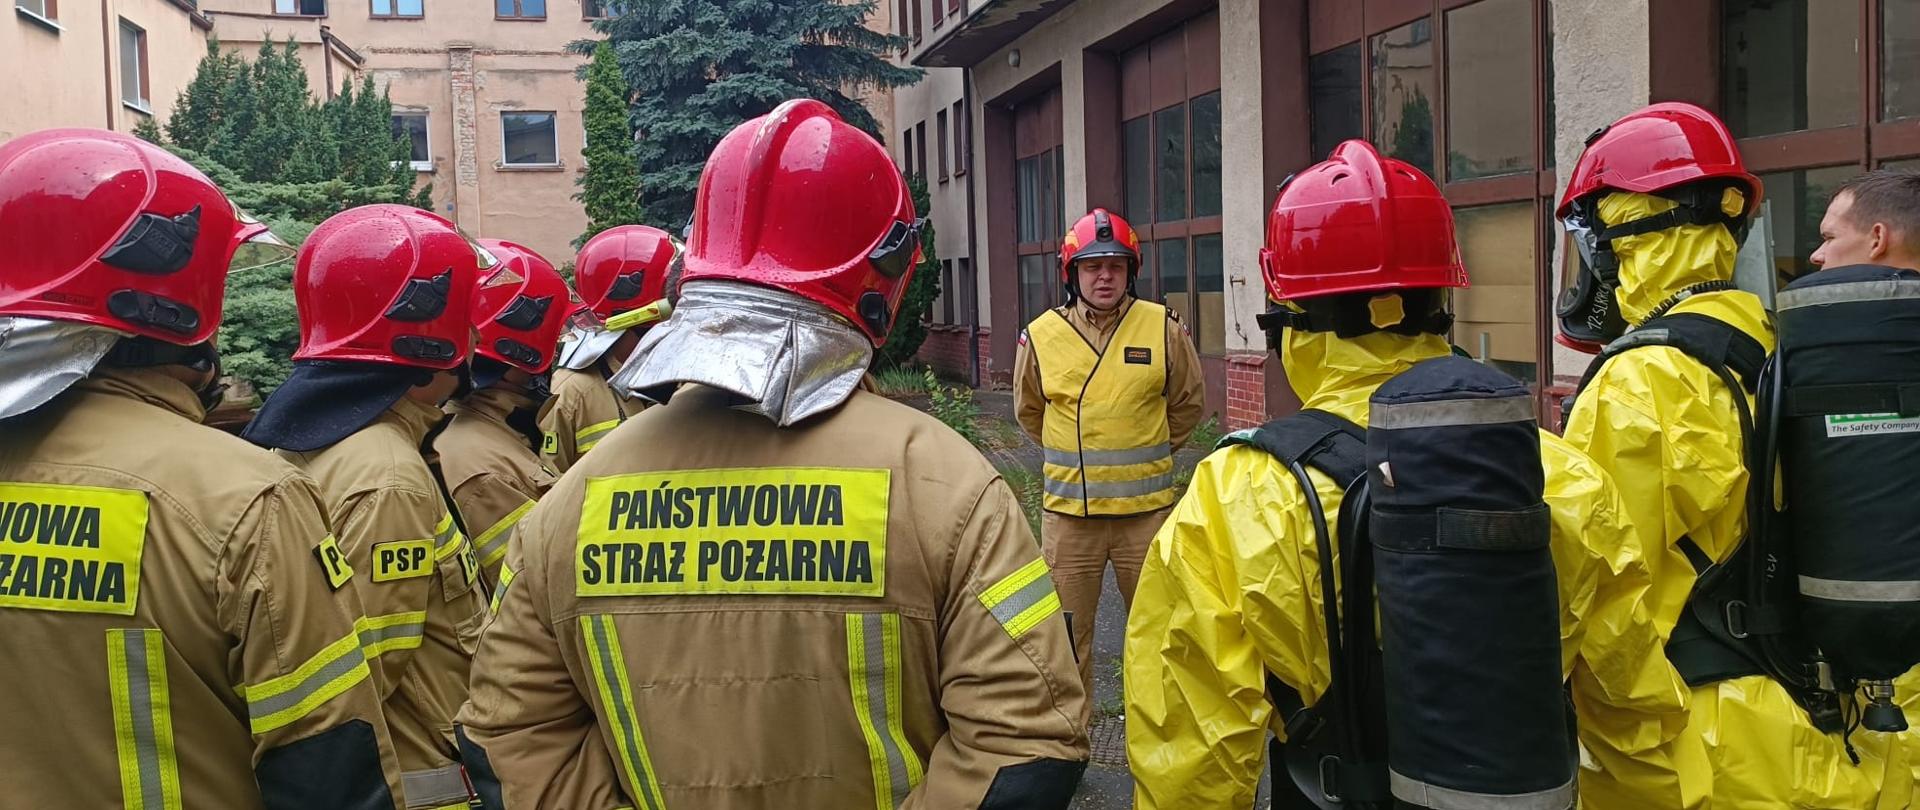 grupa strażaków w jasnych mundurach bojowych i w czerwonych hełmach stoi w okręgu, jeden strażak w żółtej kamizelce i czerwonym hełmie mówi di nich, w tle duży budynek